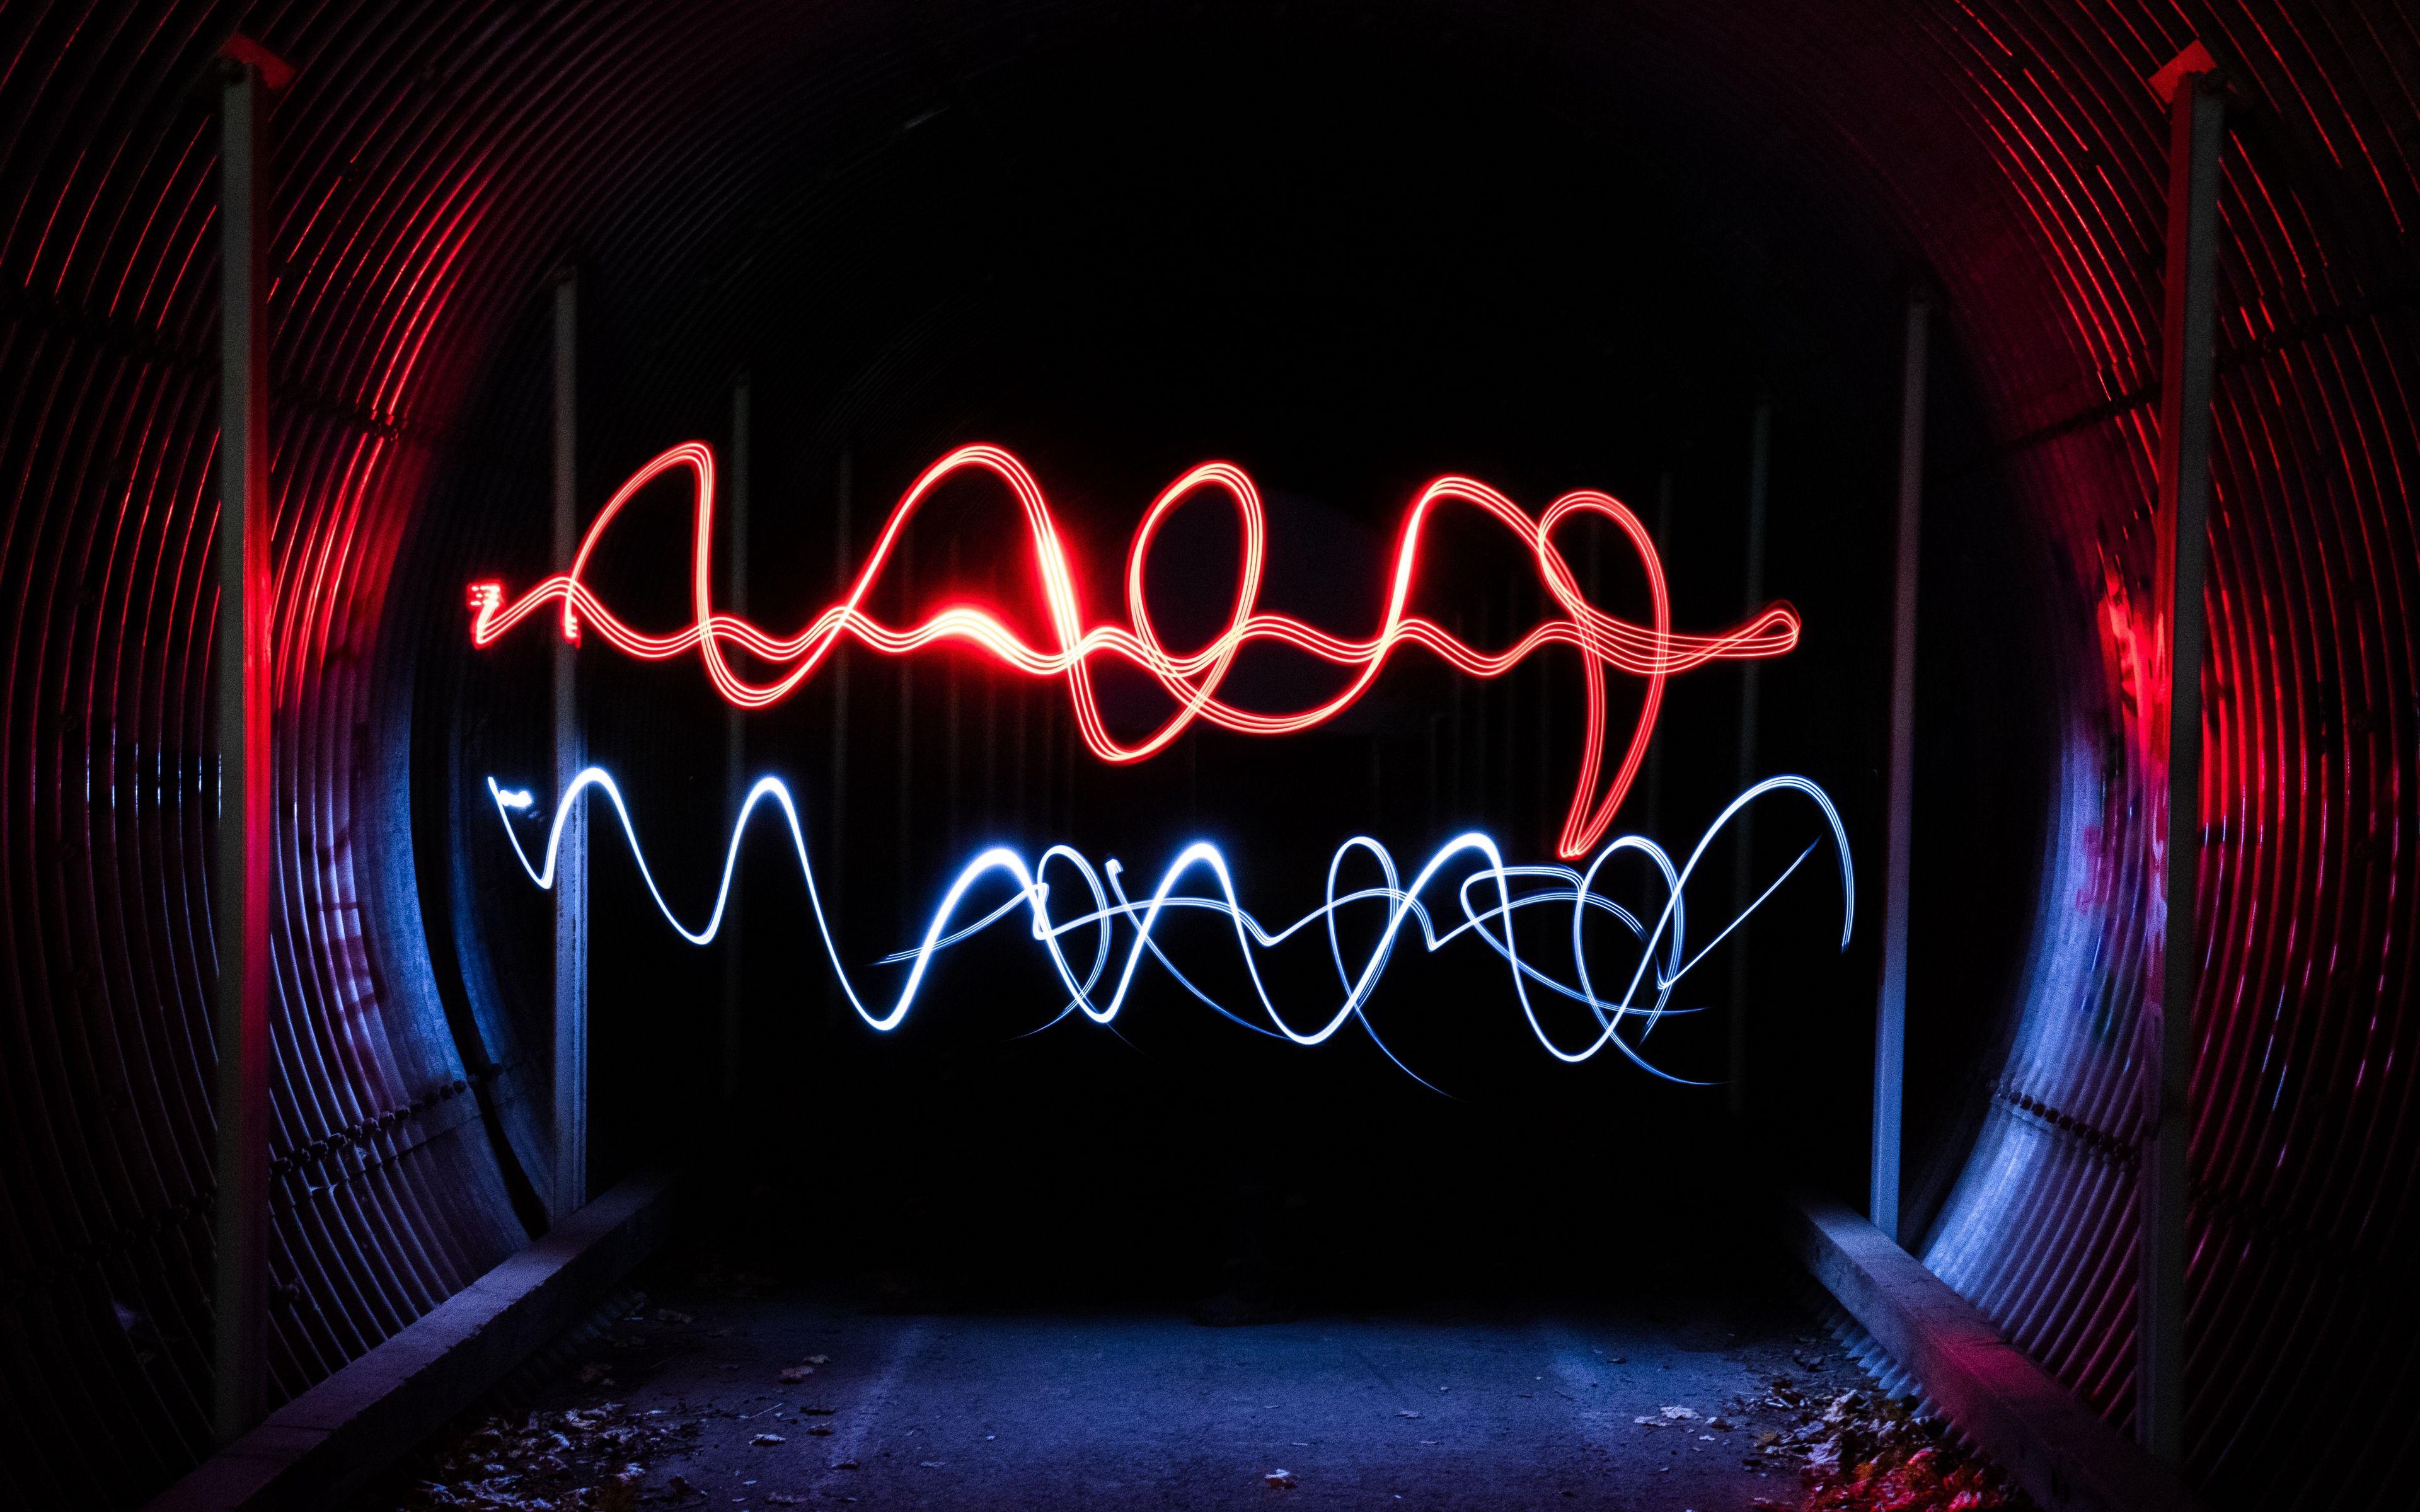 3840 x 2400 · jpeg - 4k Neon Light Sign Wallpapers - Wallpaper Cave